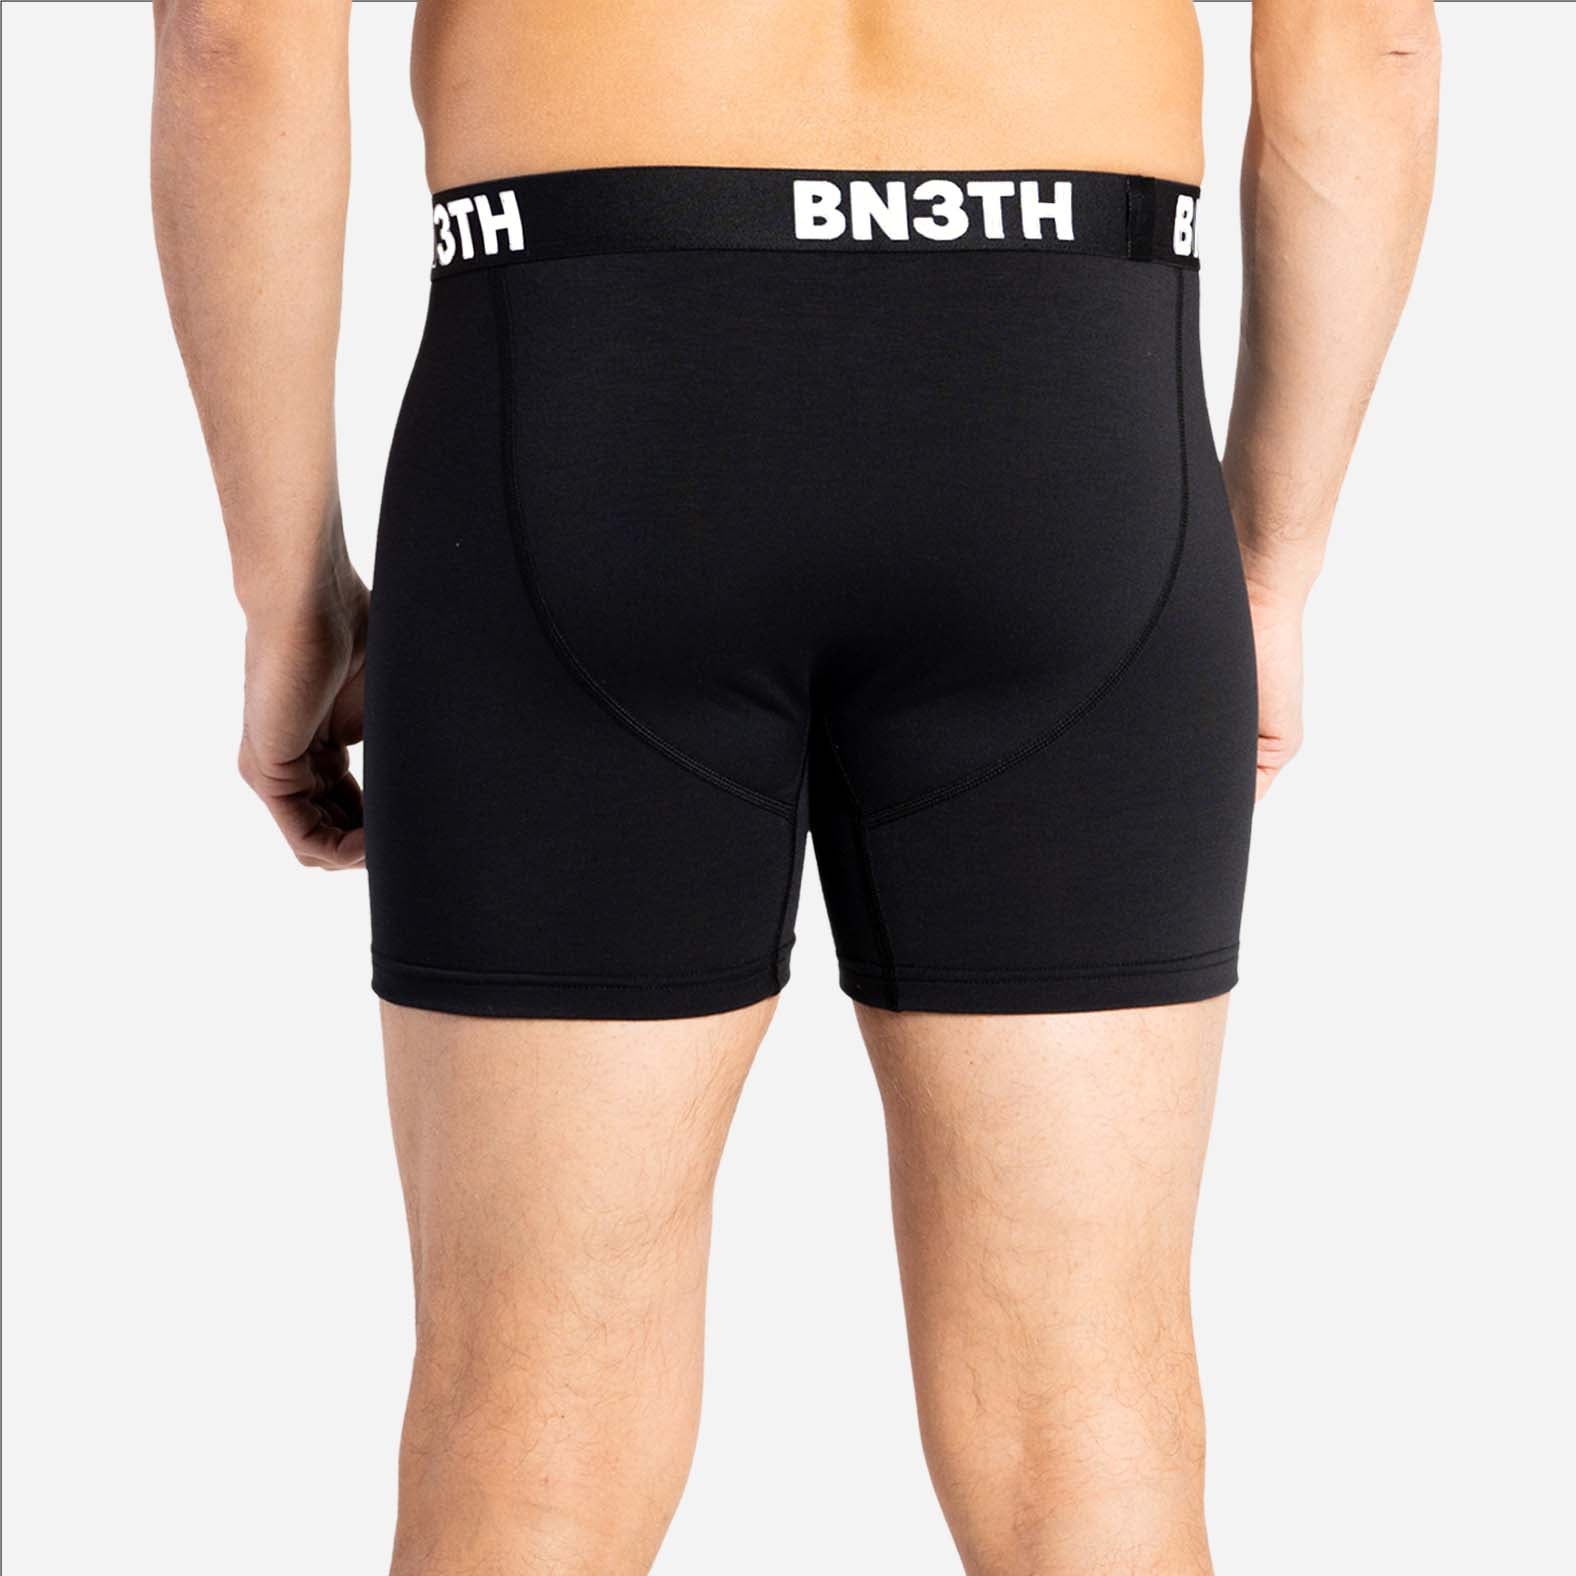 Outset Boxer Brief: Black  BN3TH Underwear –